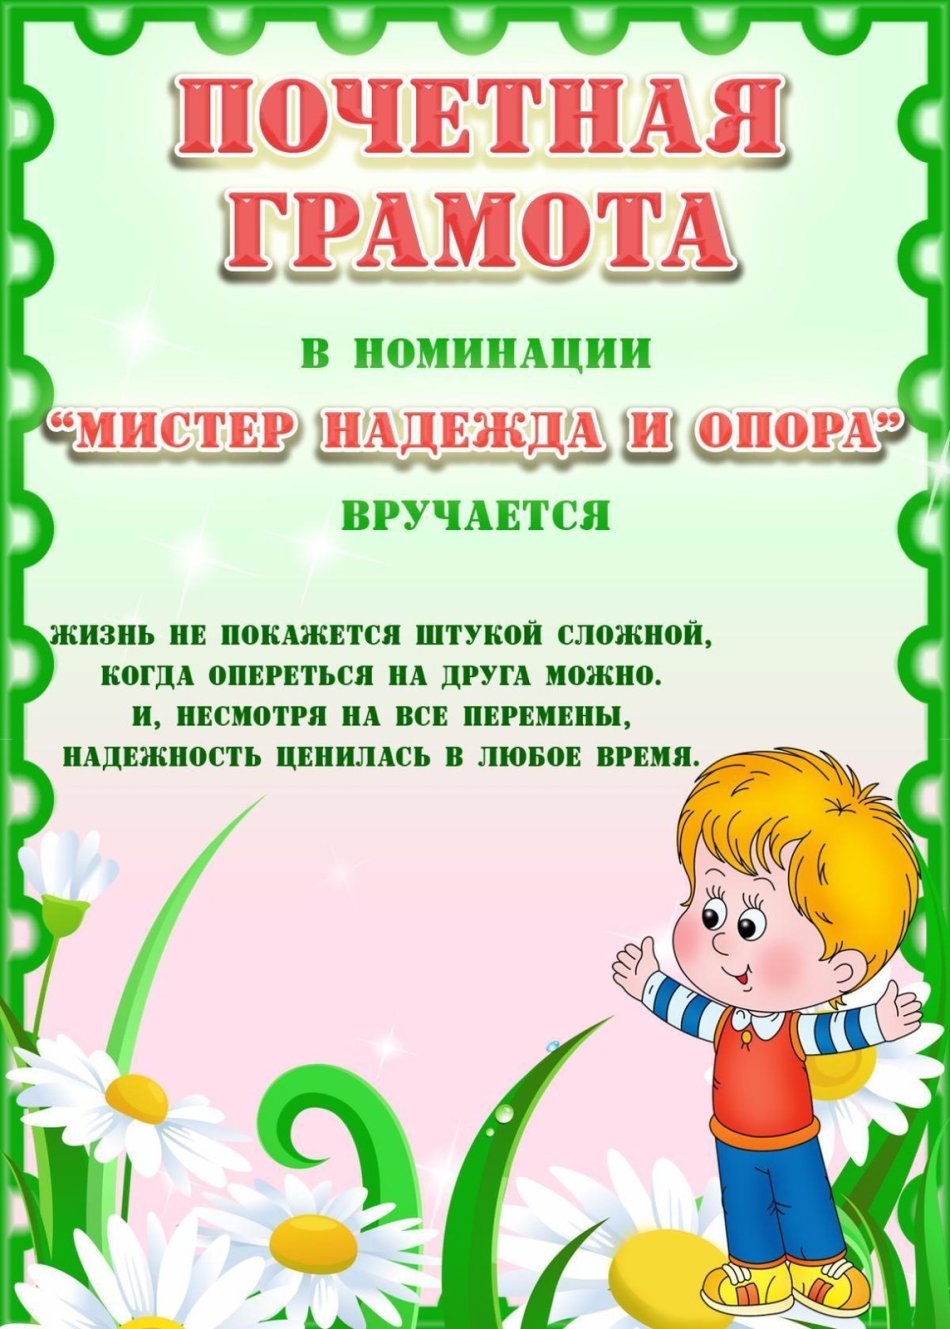 Literace nomination in kindergarten for children